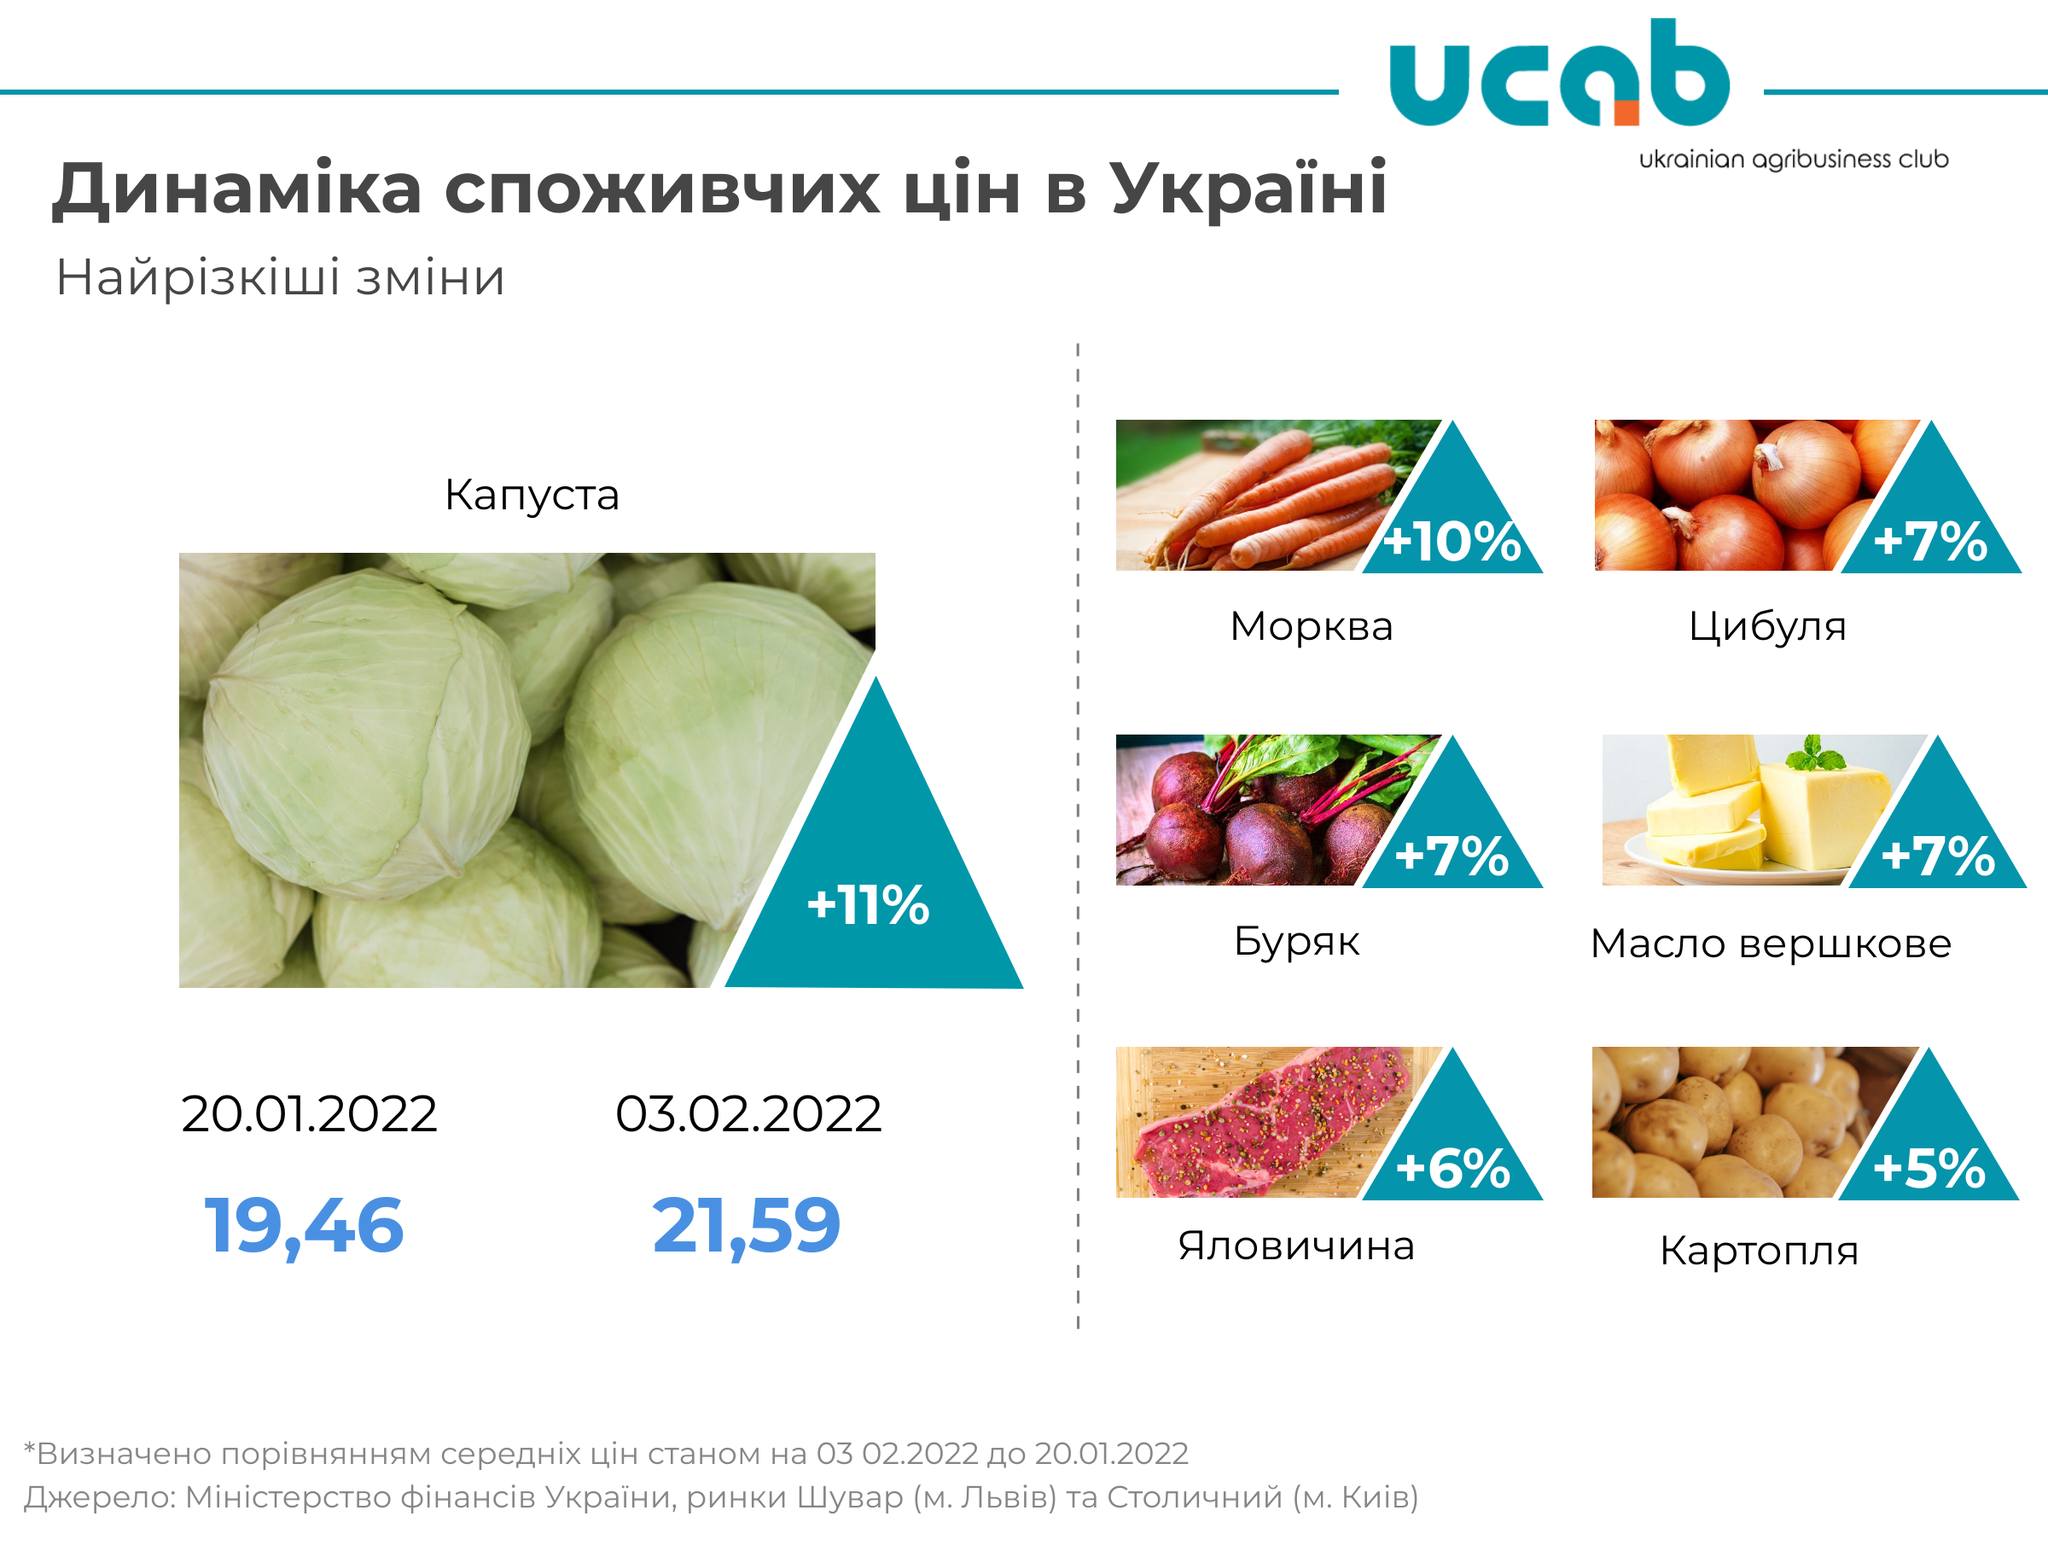 Какие продукты больше всего подорожали в Украине: аналитики проанализировали цены за две недели  - фото 2